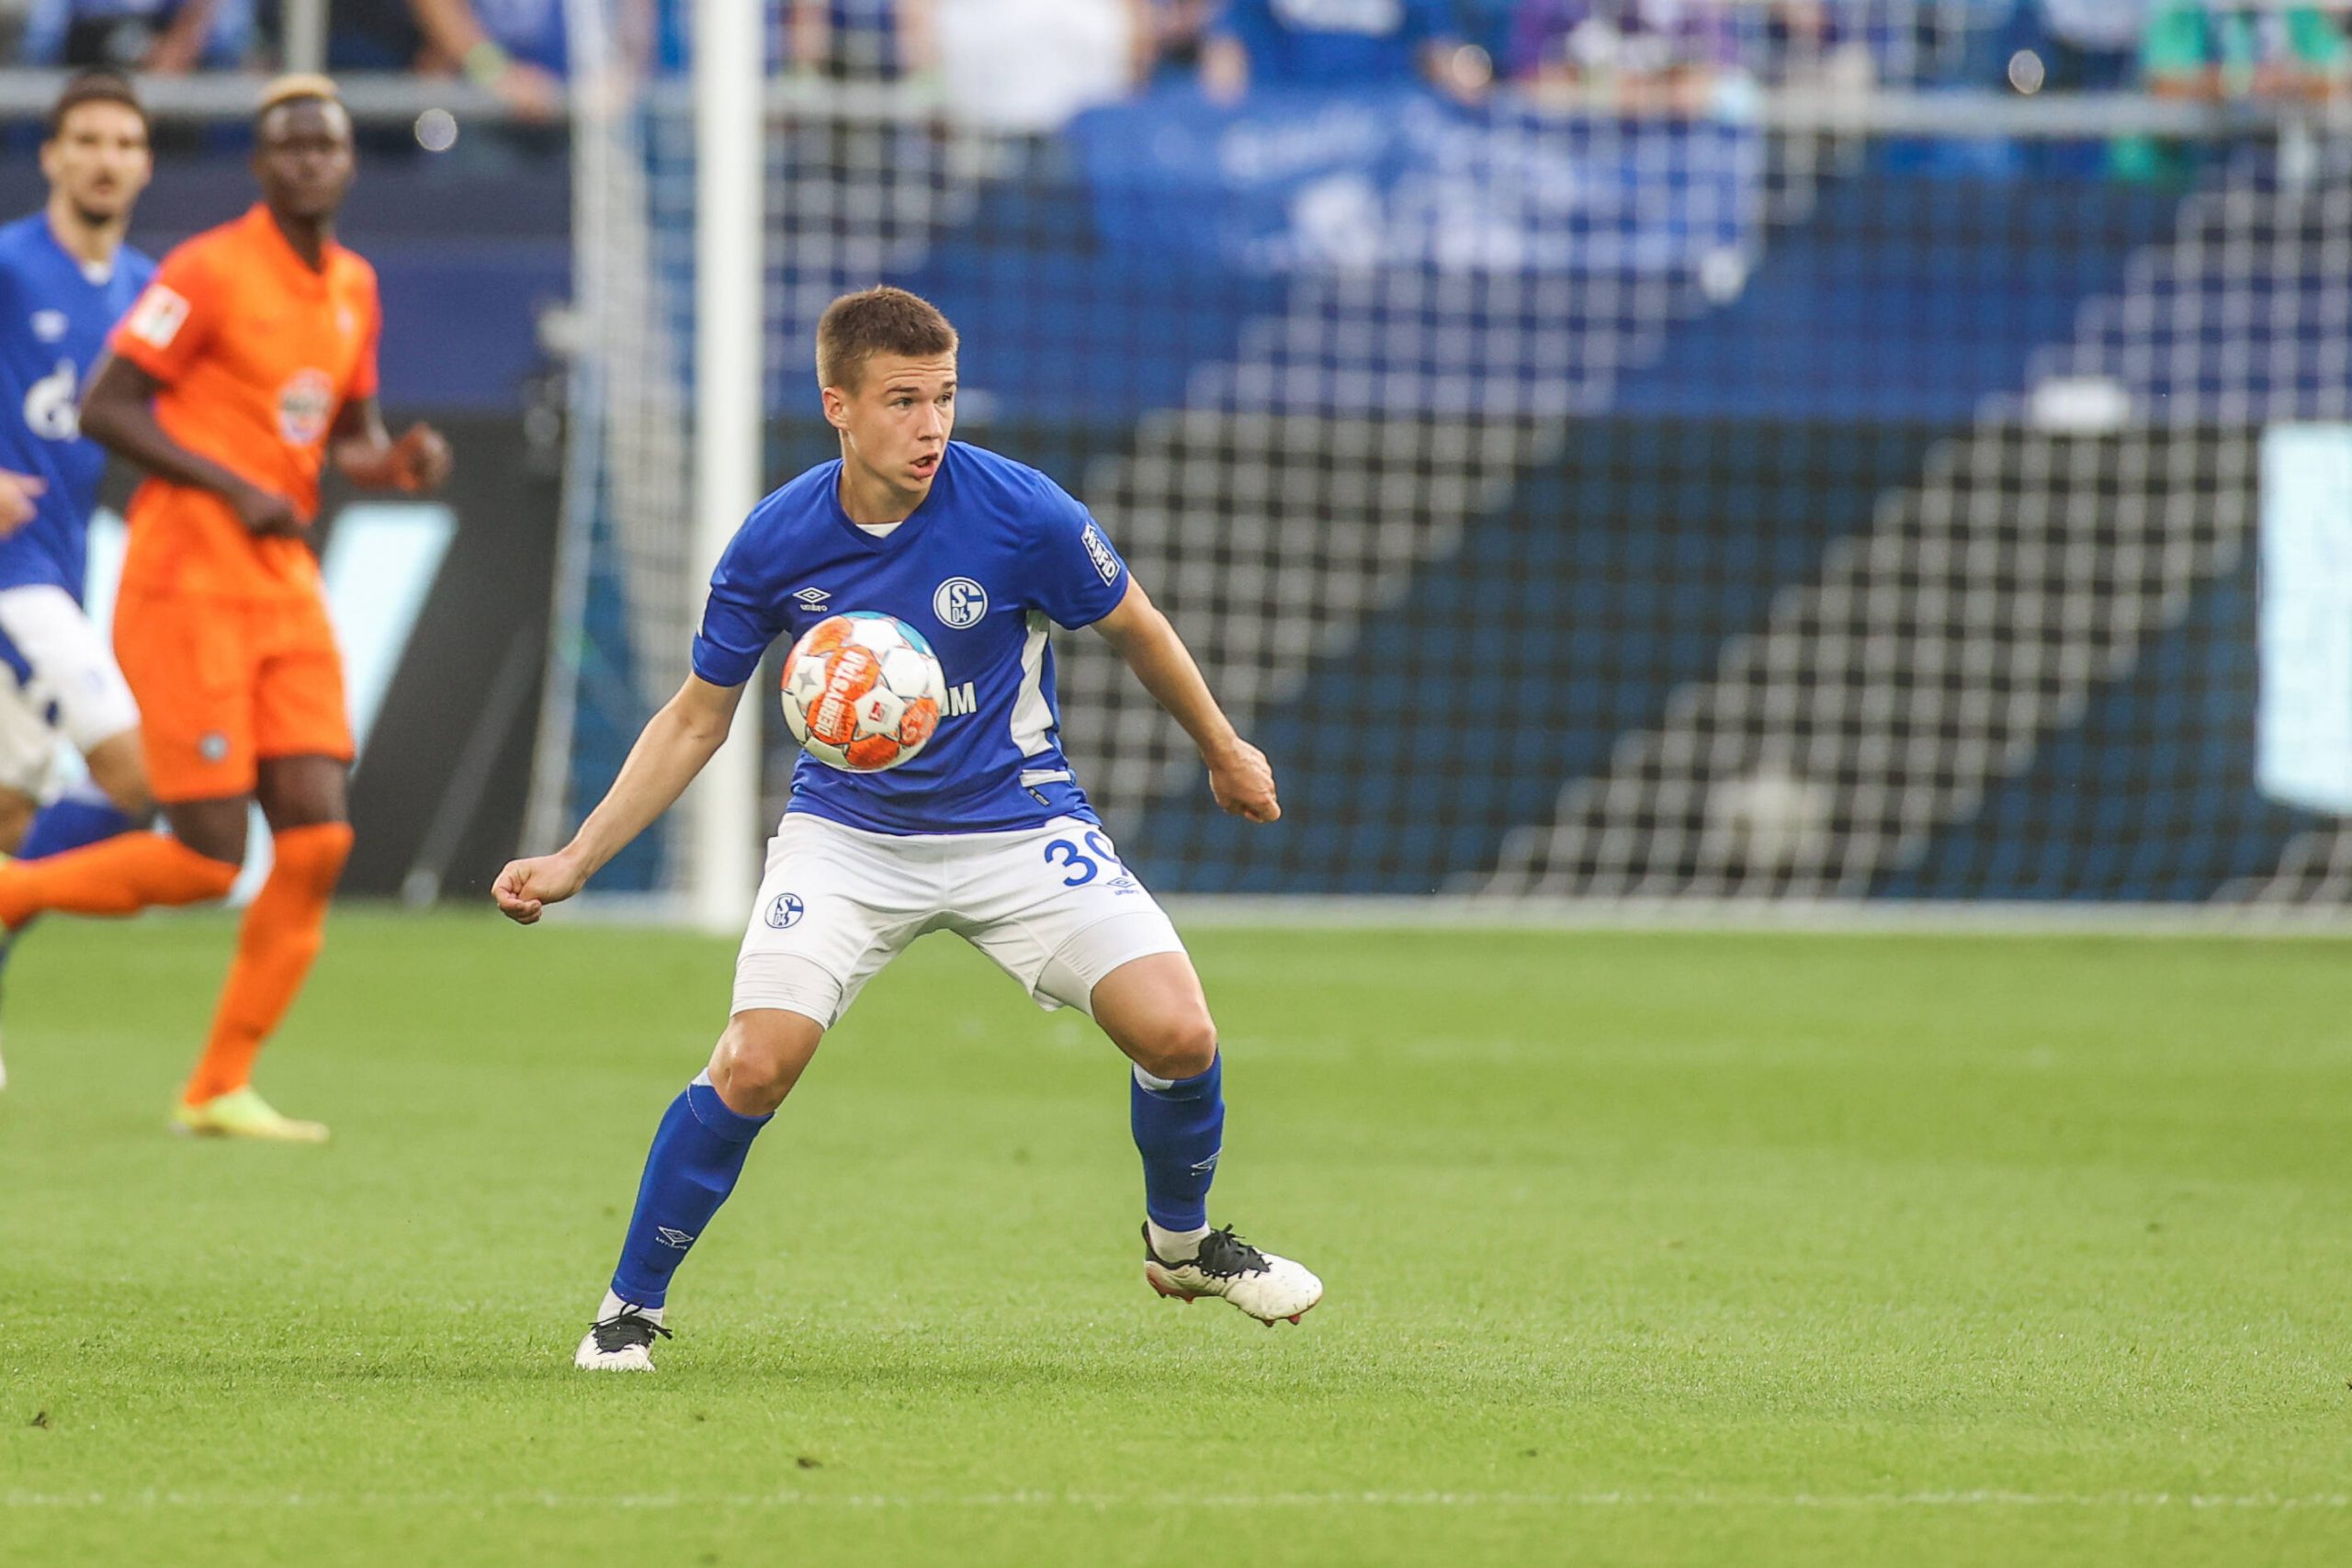 Yaroslav Mikhailov: Zenit loanee with instant impact for Schalke